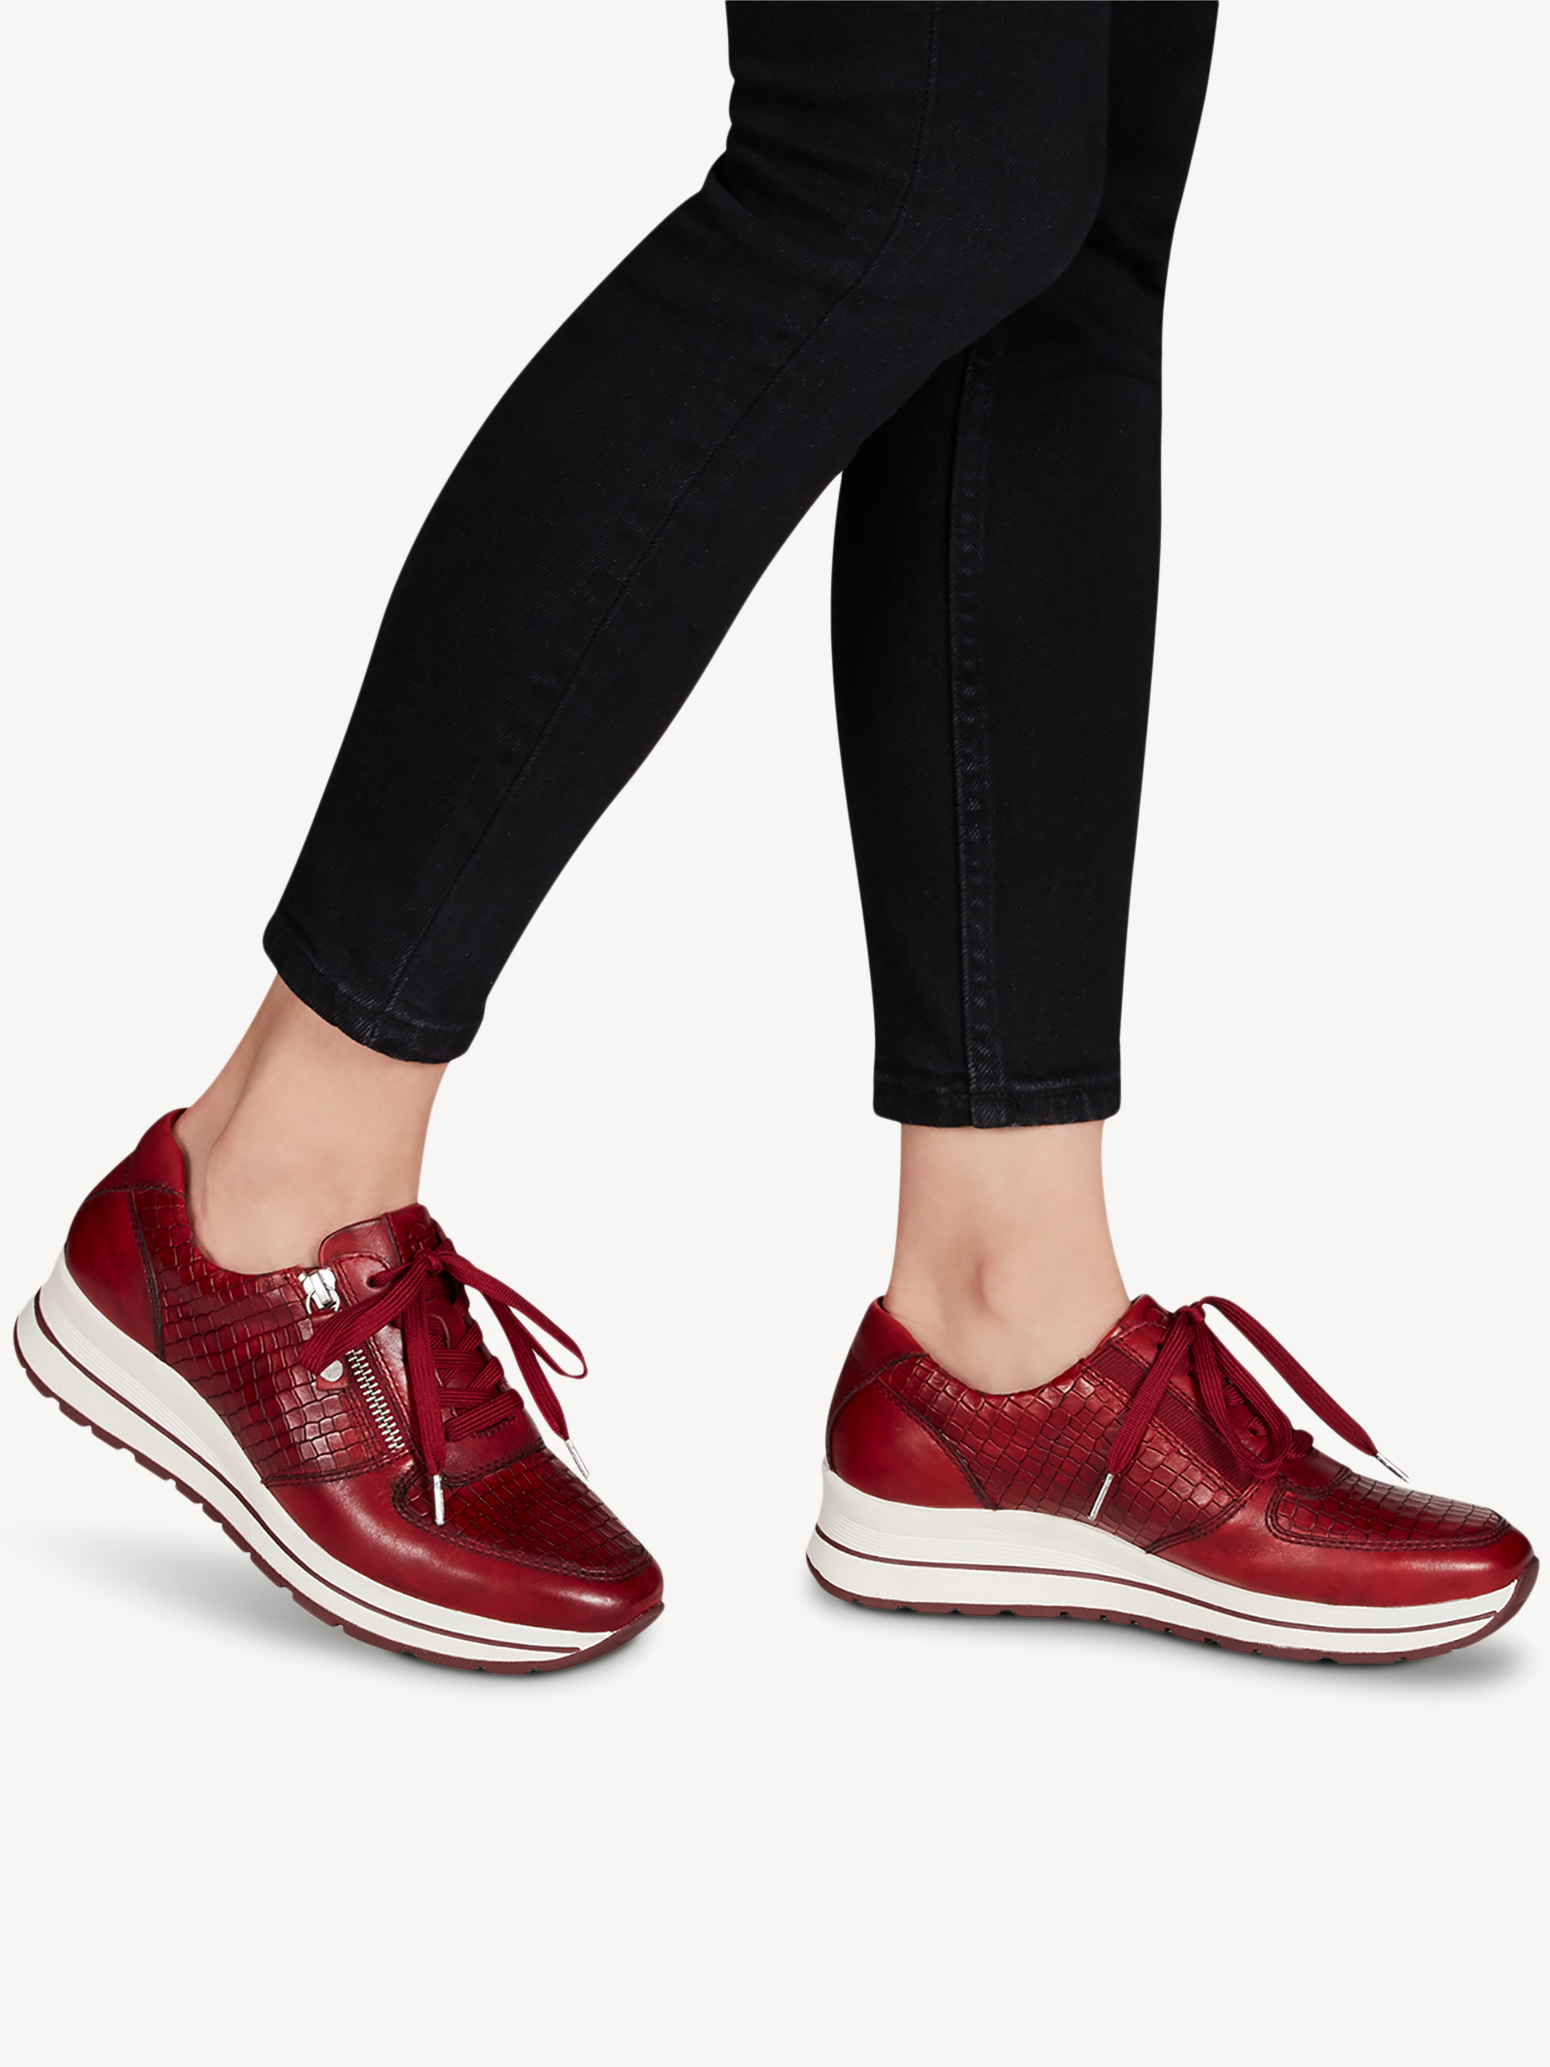 Ботинки на шнурках женские (красный/крокодиловый узор) - изображение №1